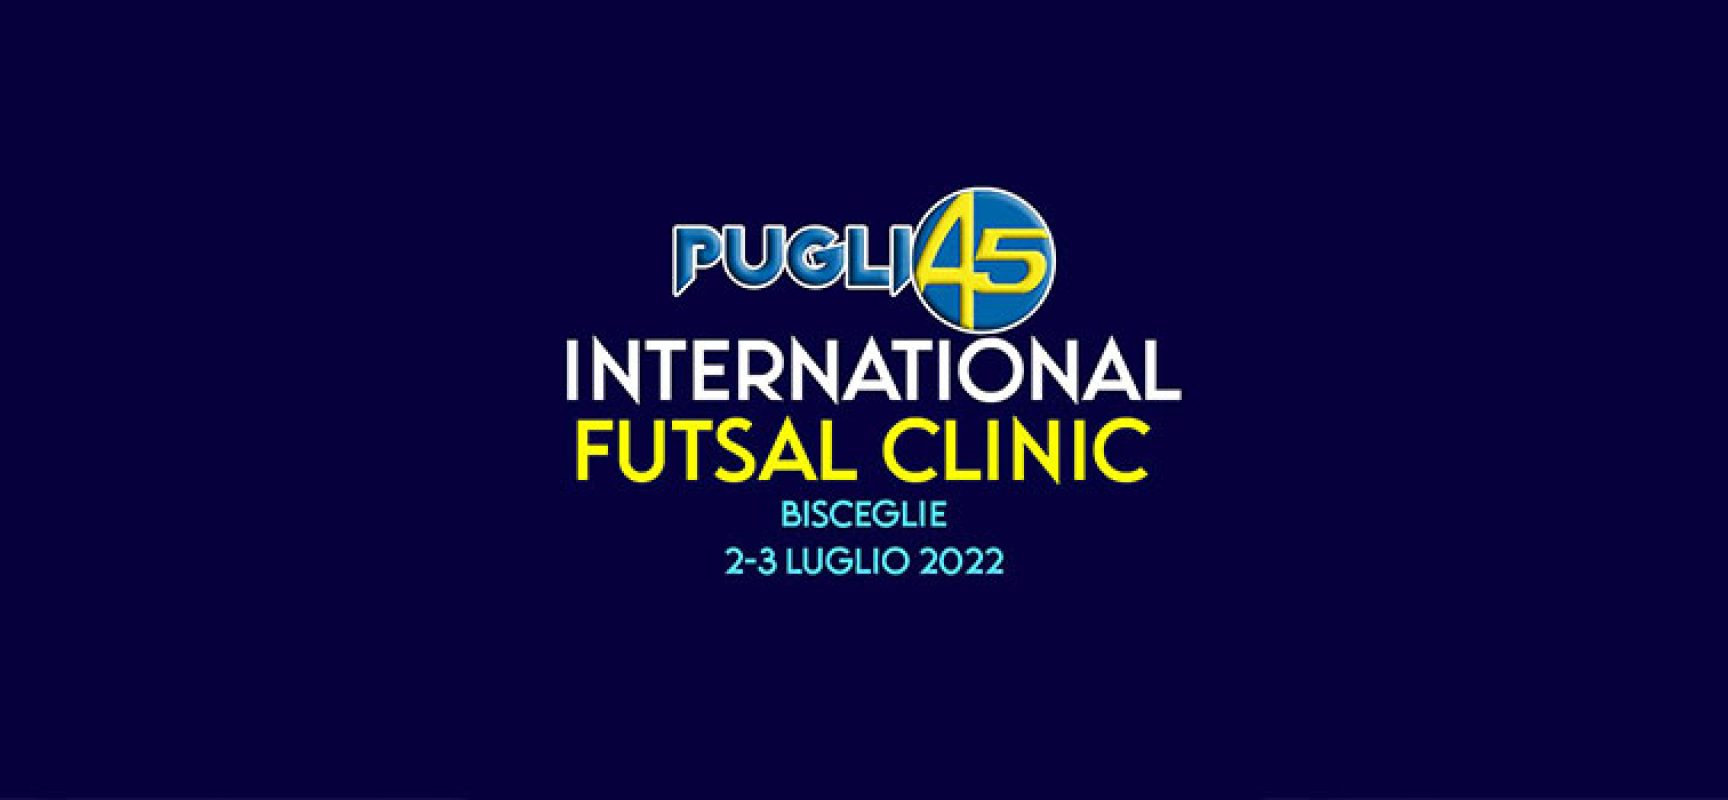 A Bisceglie c’è il “Puglia5 International Futsal Clinic” con Colini e Ceppi